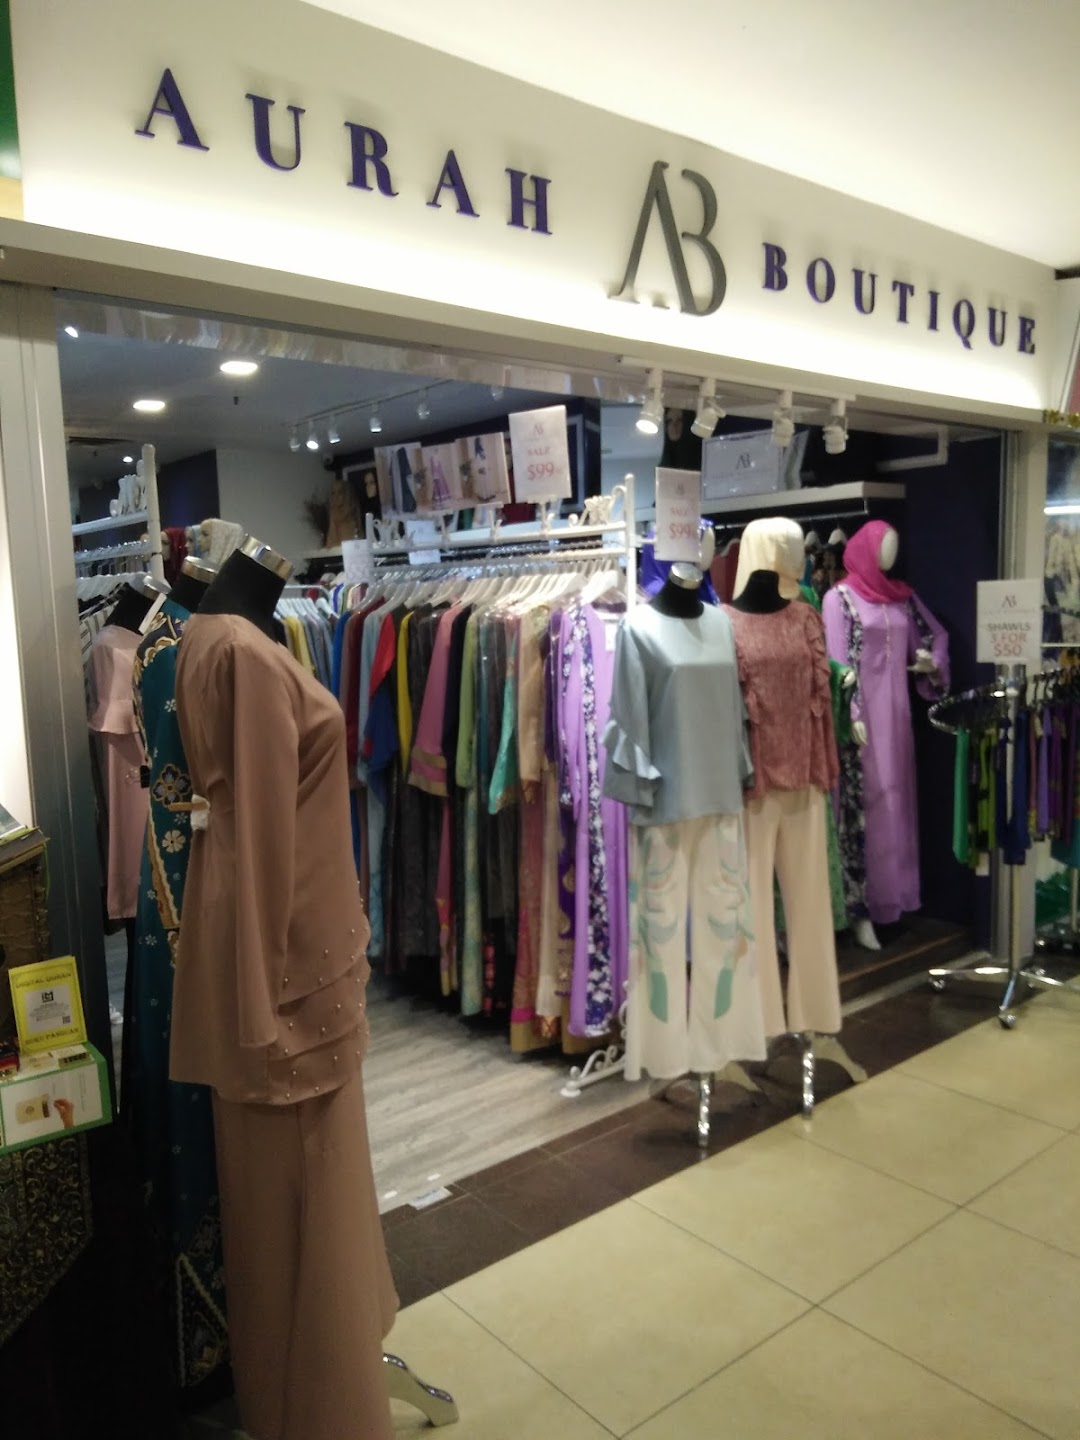 Aurah Boutique